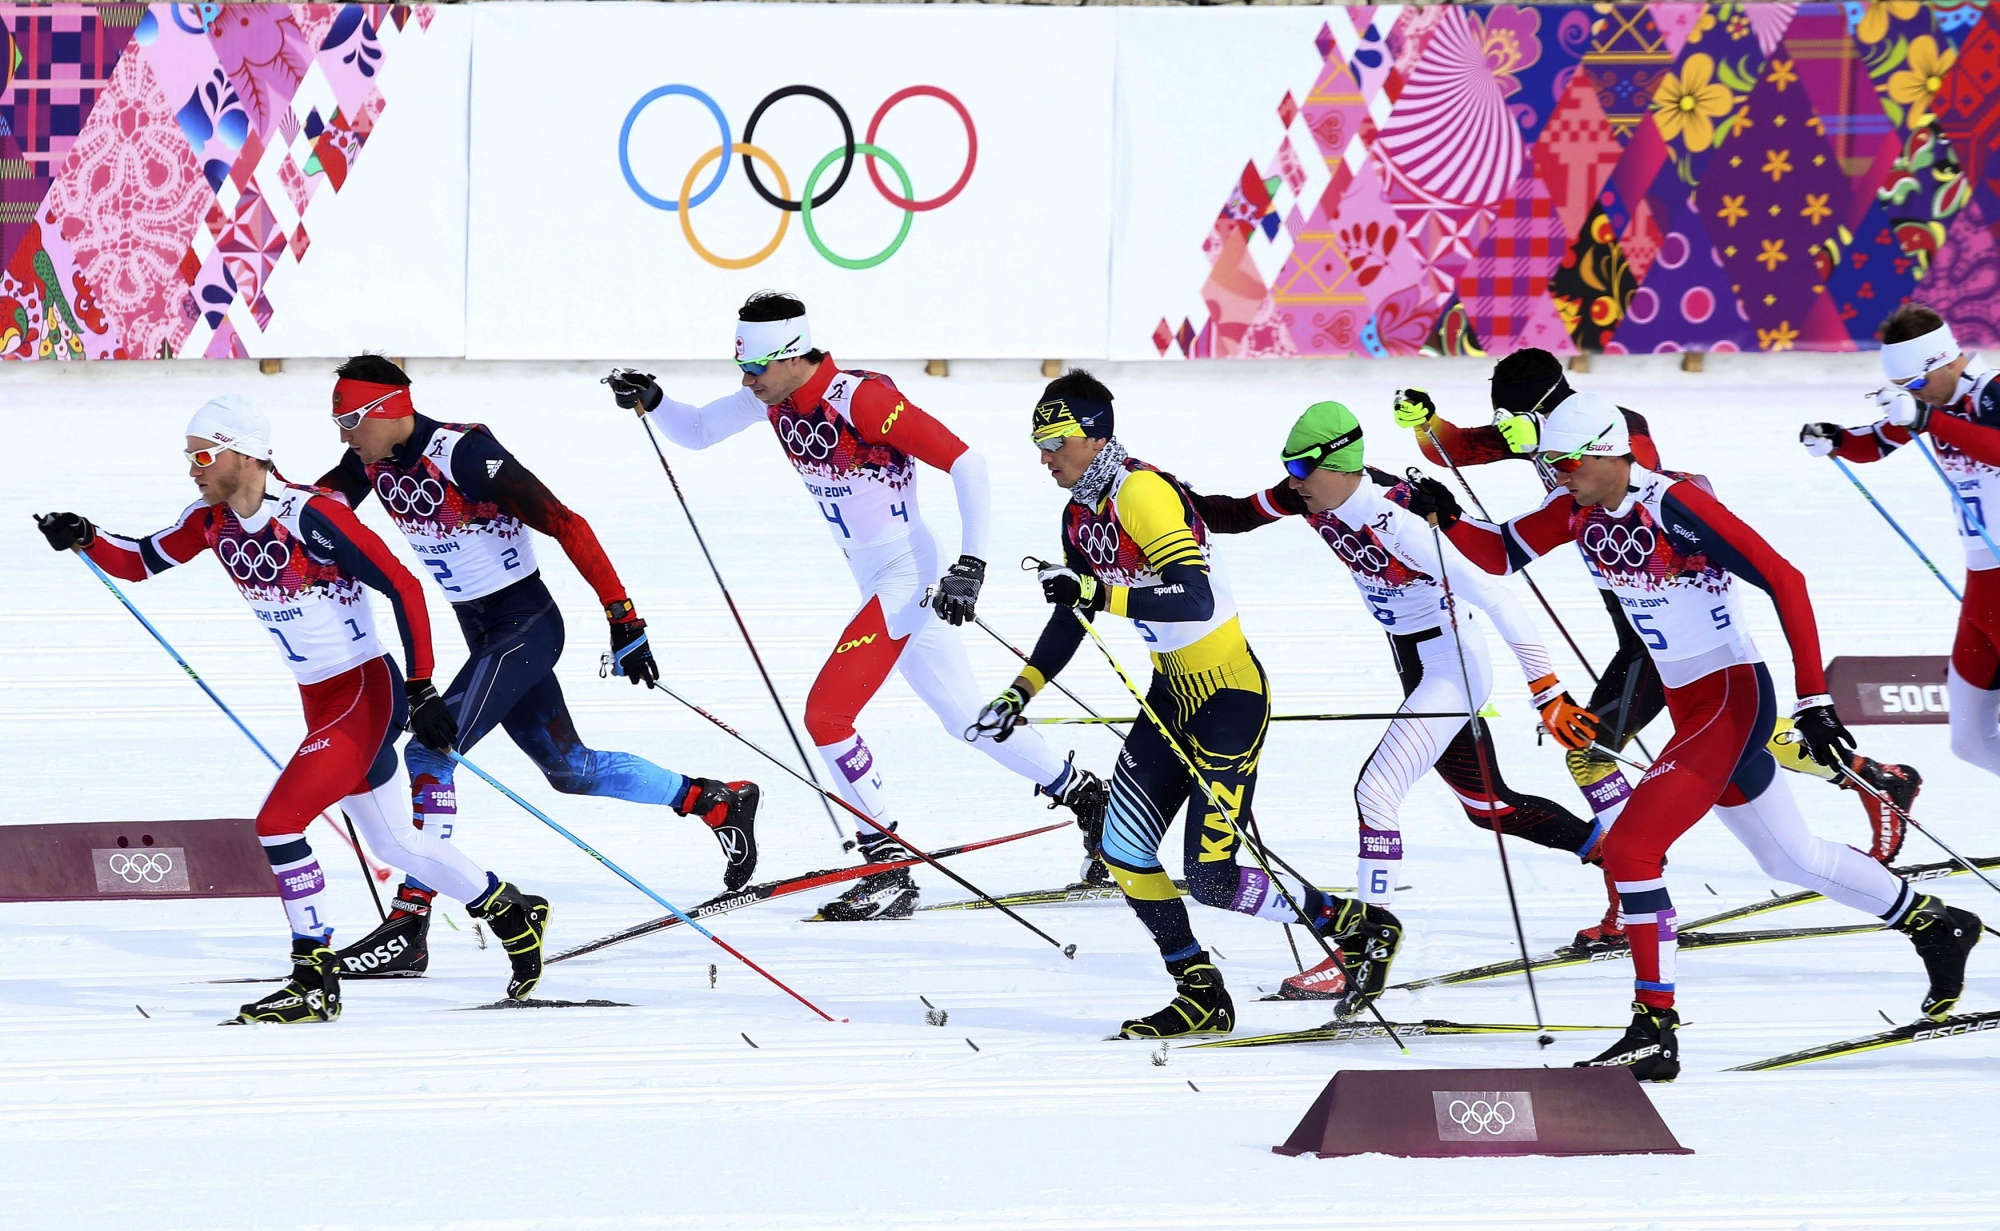 Видео скиатлона сегодня мужчины. Скиатлон. Скиатлон финиш ОИ. Картинка спорт скиатлон для детей на прозрачном фоне. Канада XX зимние Олимпийские игры в Турине картинки.